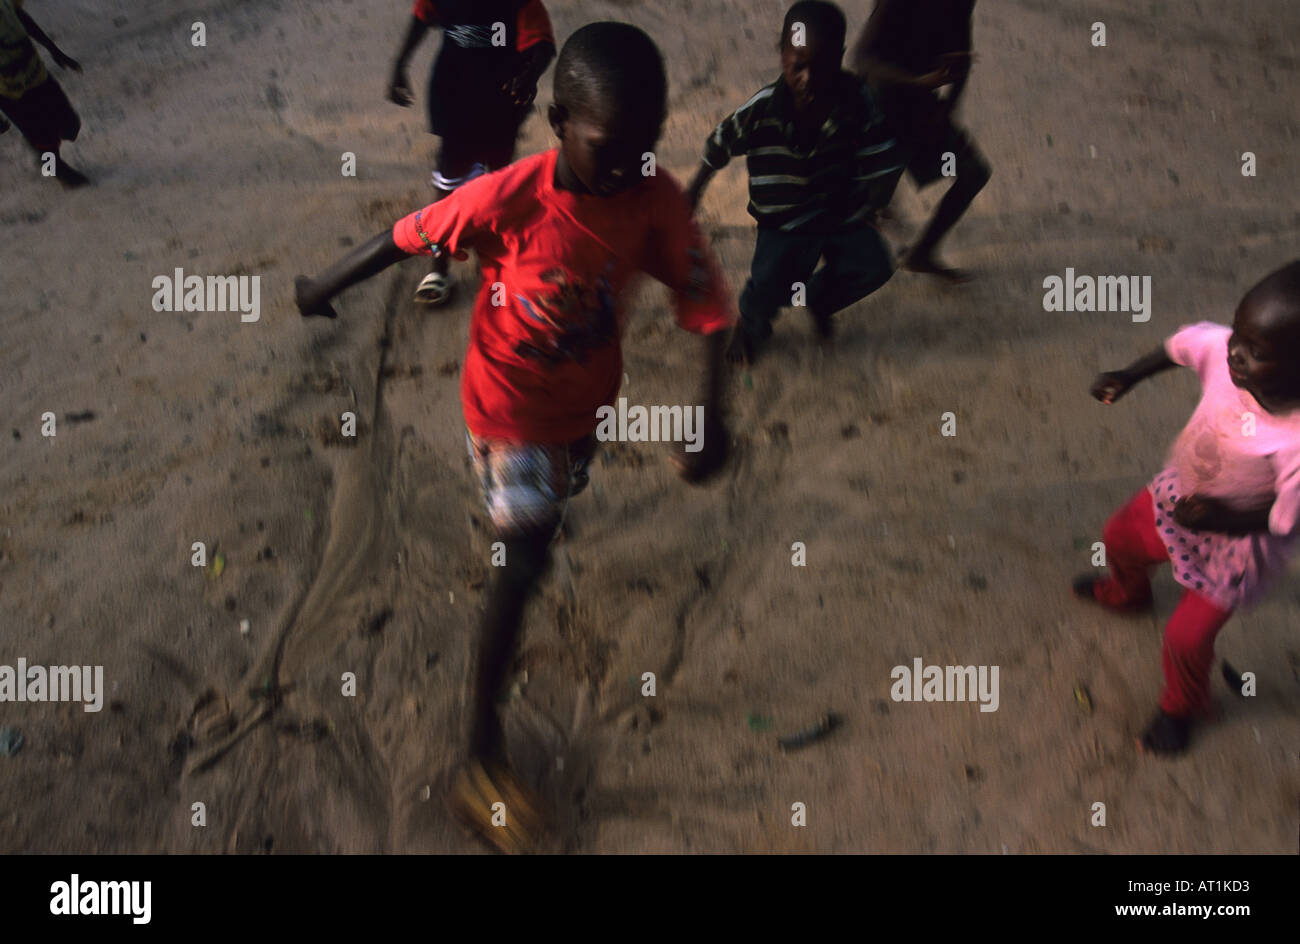 Les jeunes enfants gambiens à jouer au football à Bakau Gambie Afrique de l'Ouest Banque D'Images